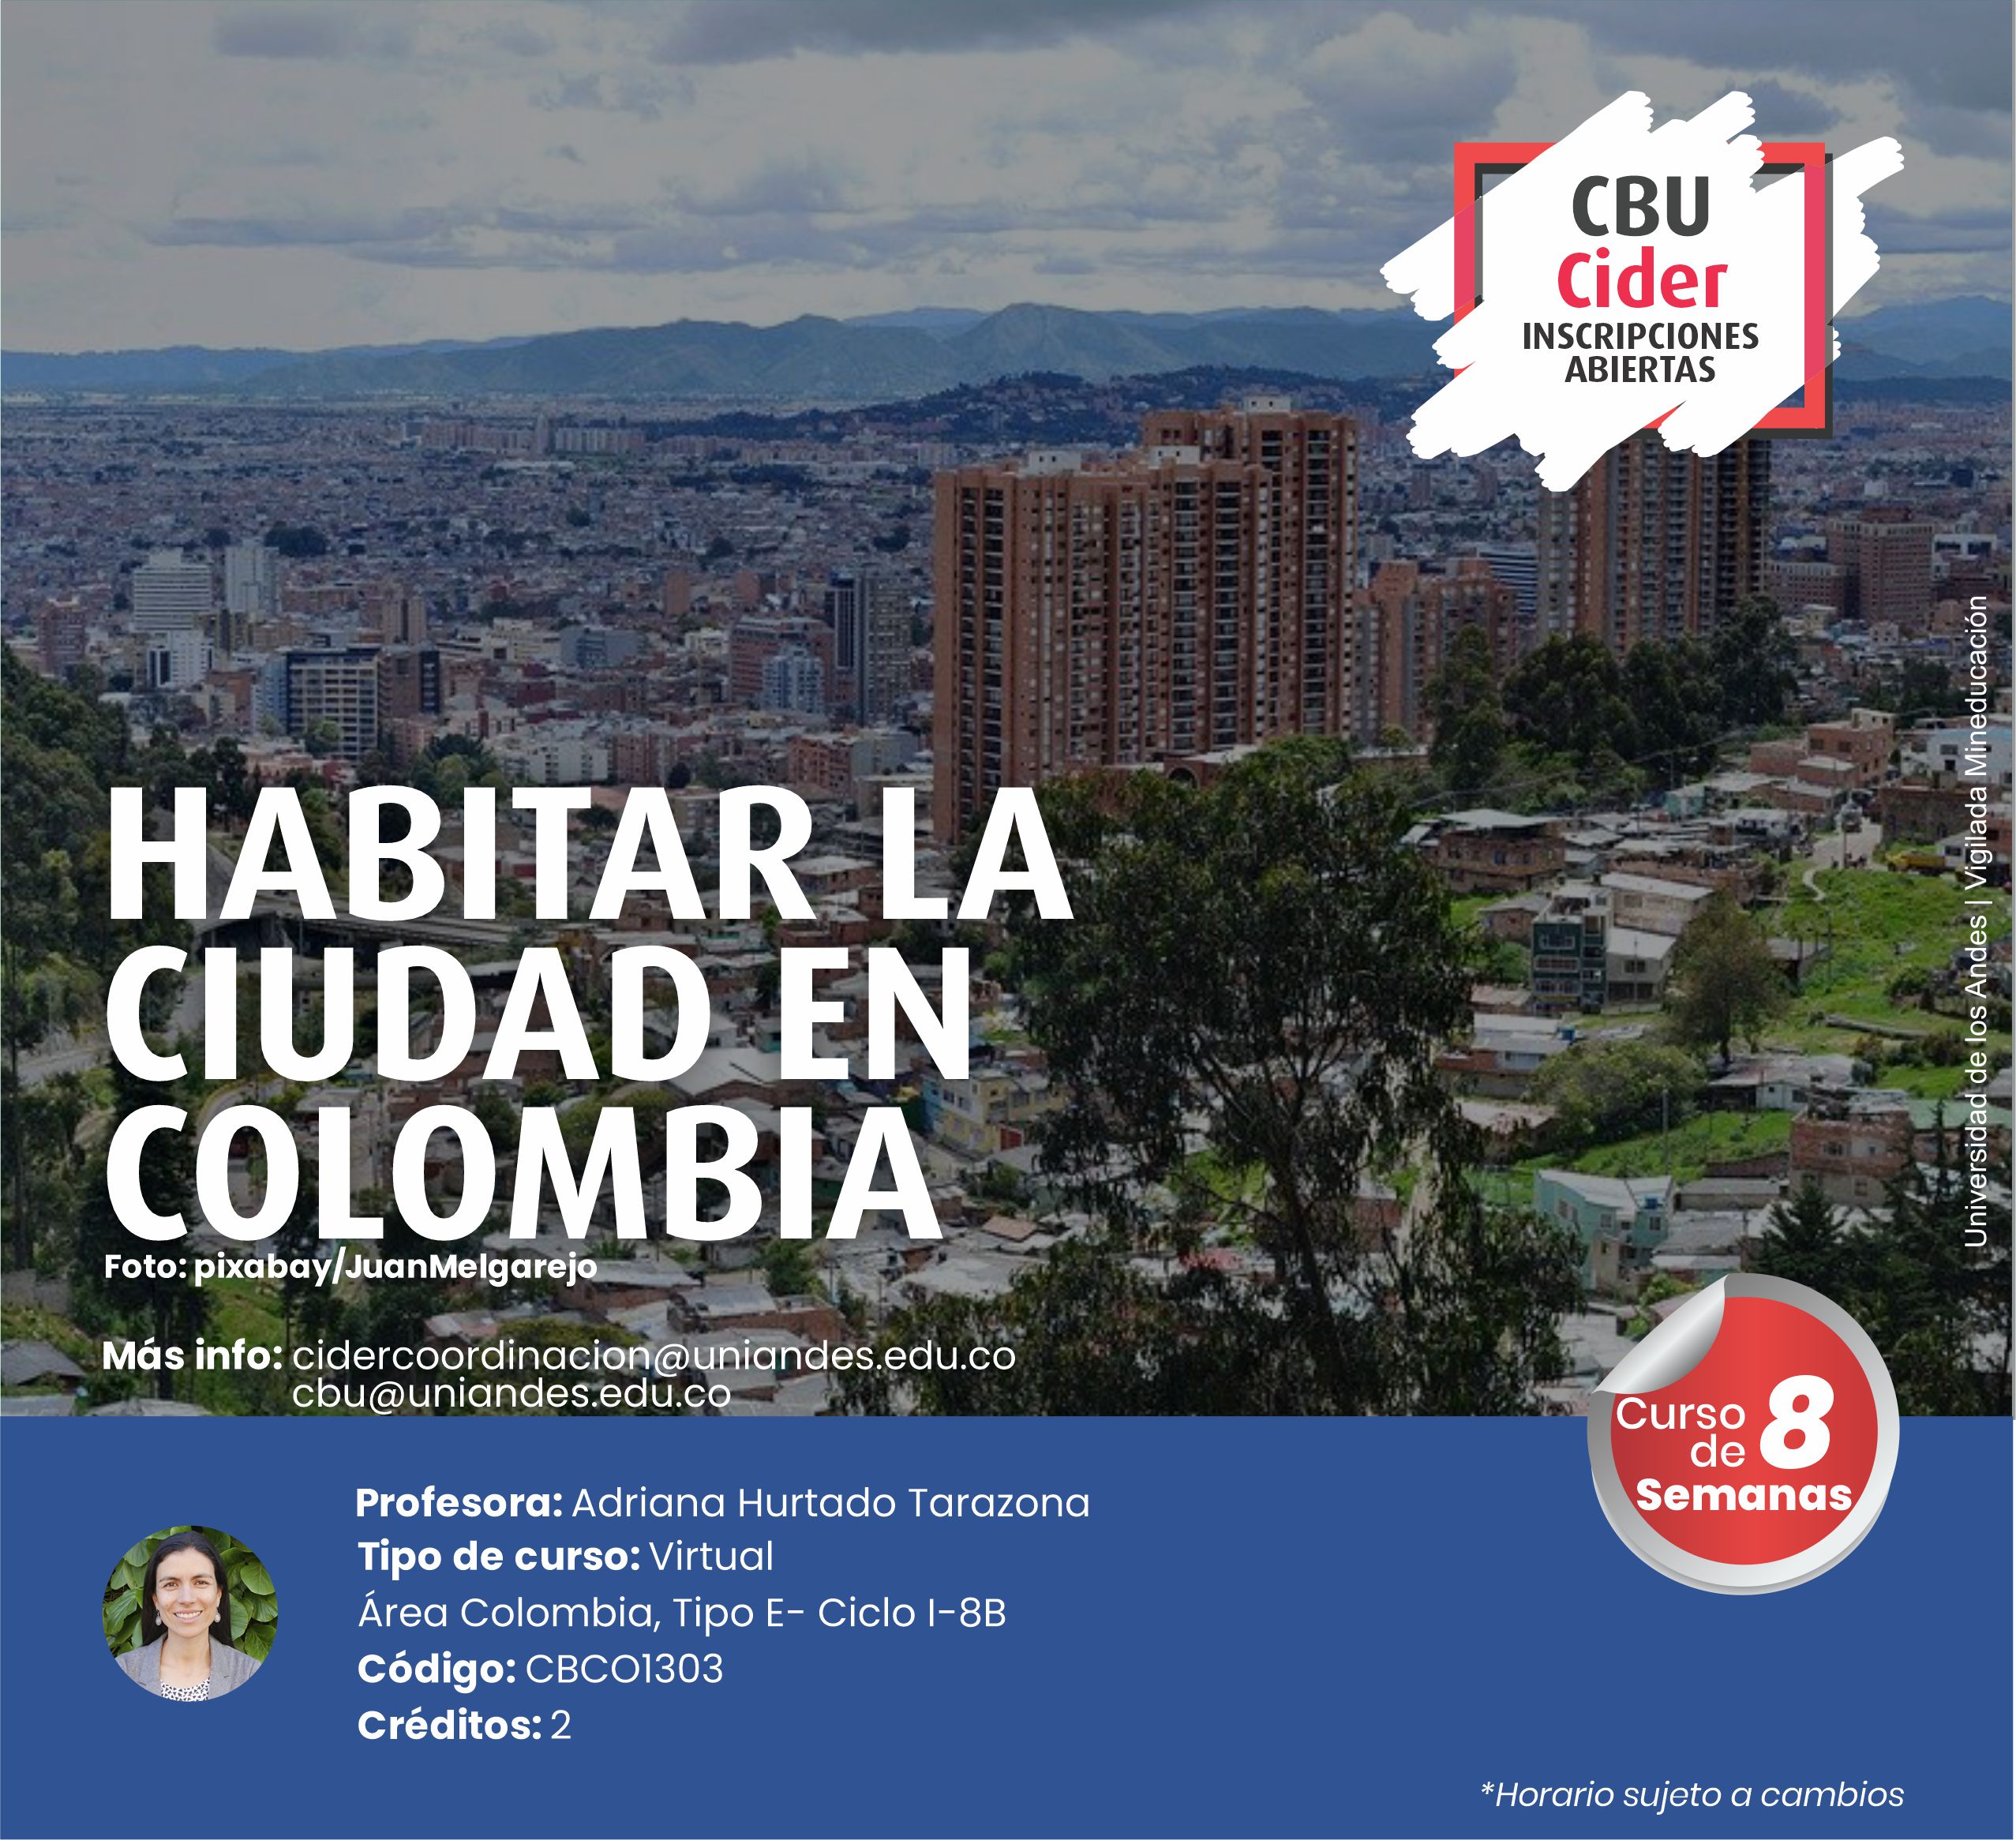 CBU: Habitar la ciudad en Colombia- Cider | Uniandes